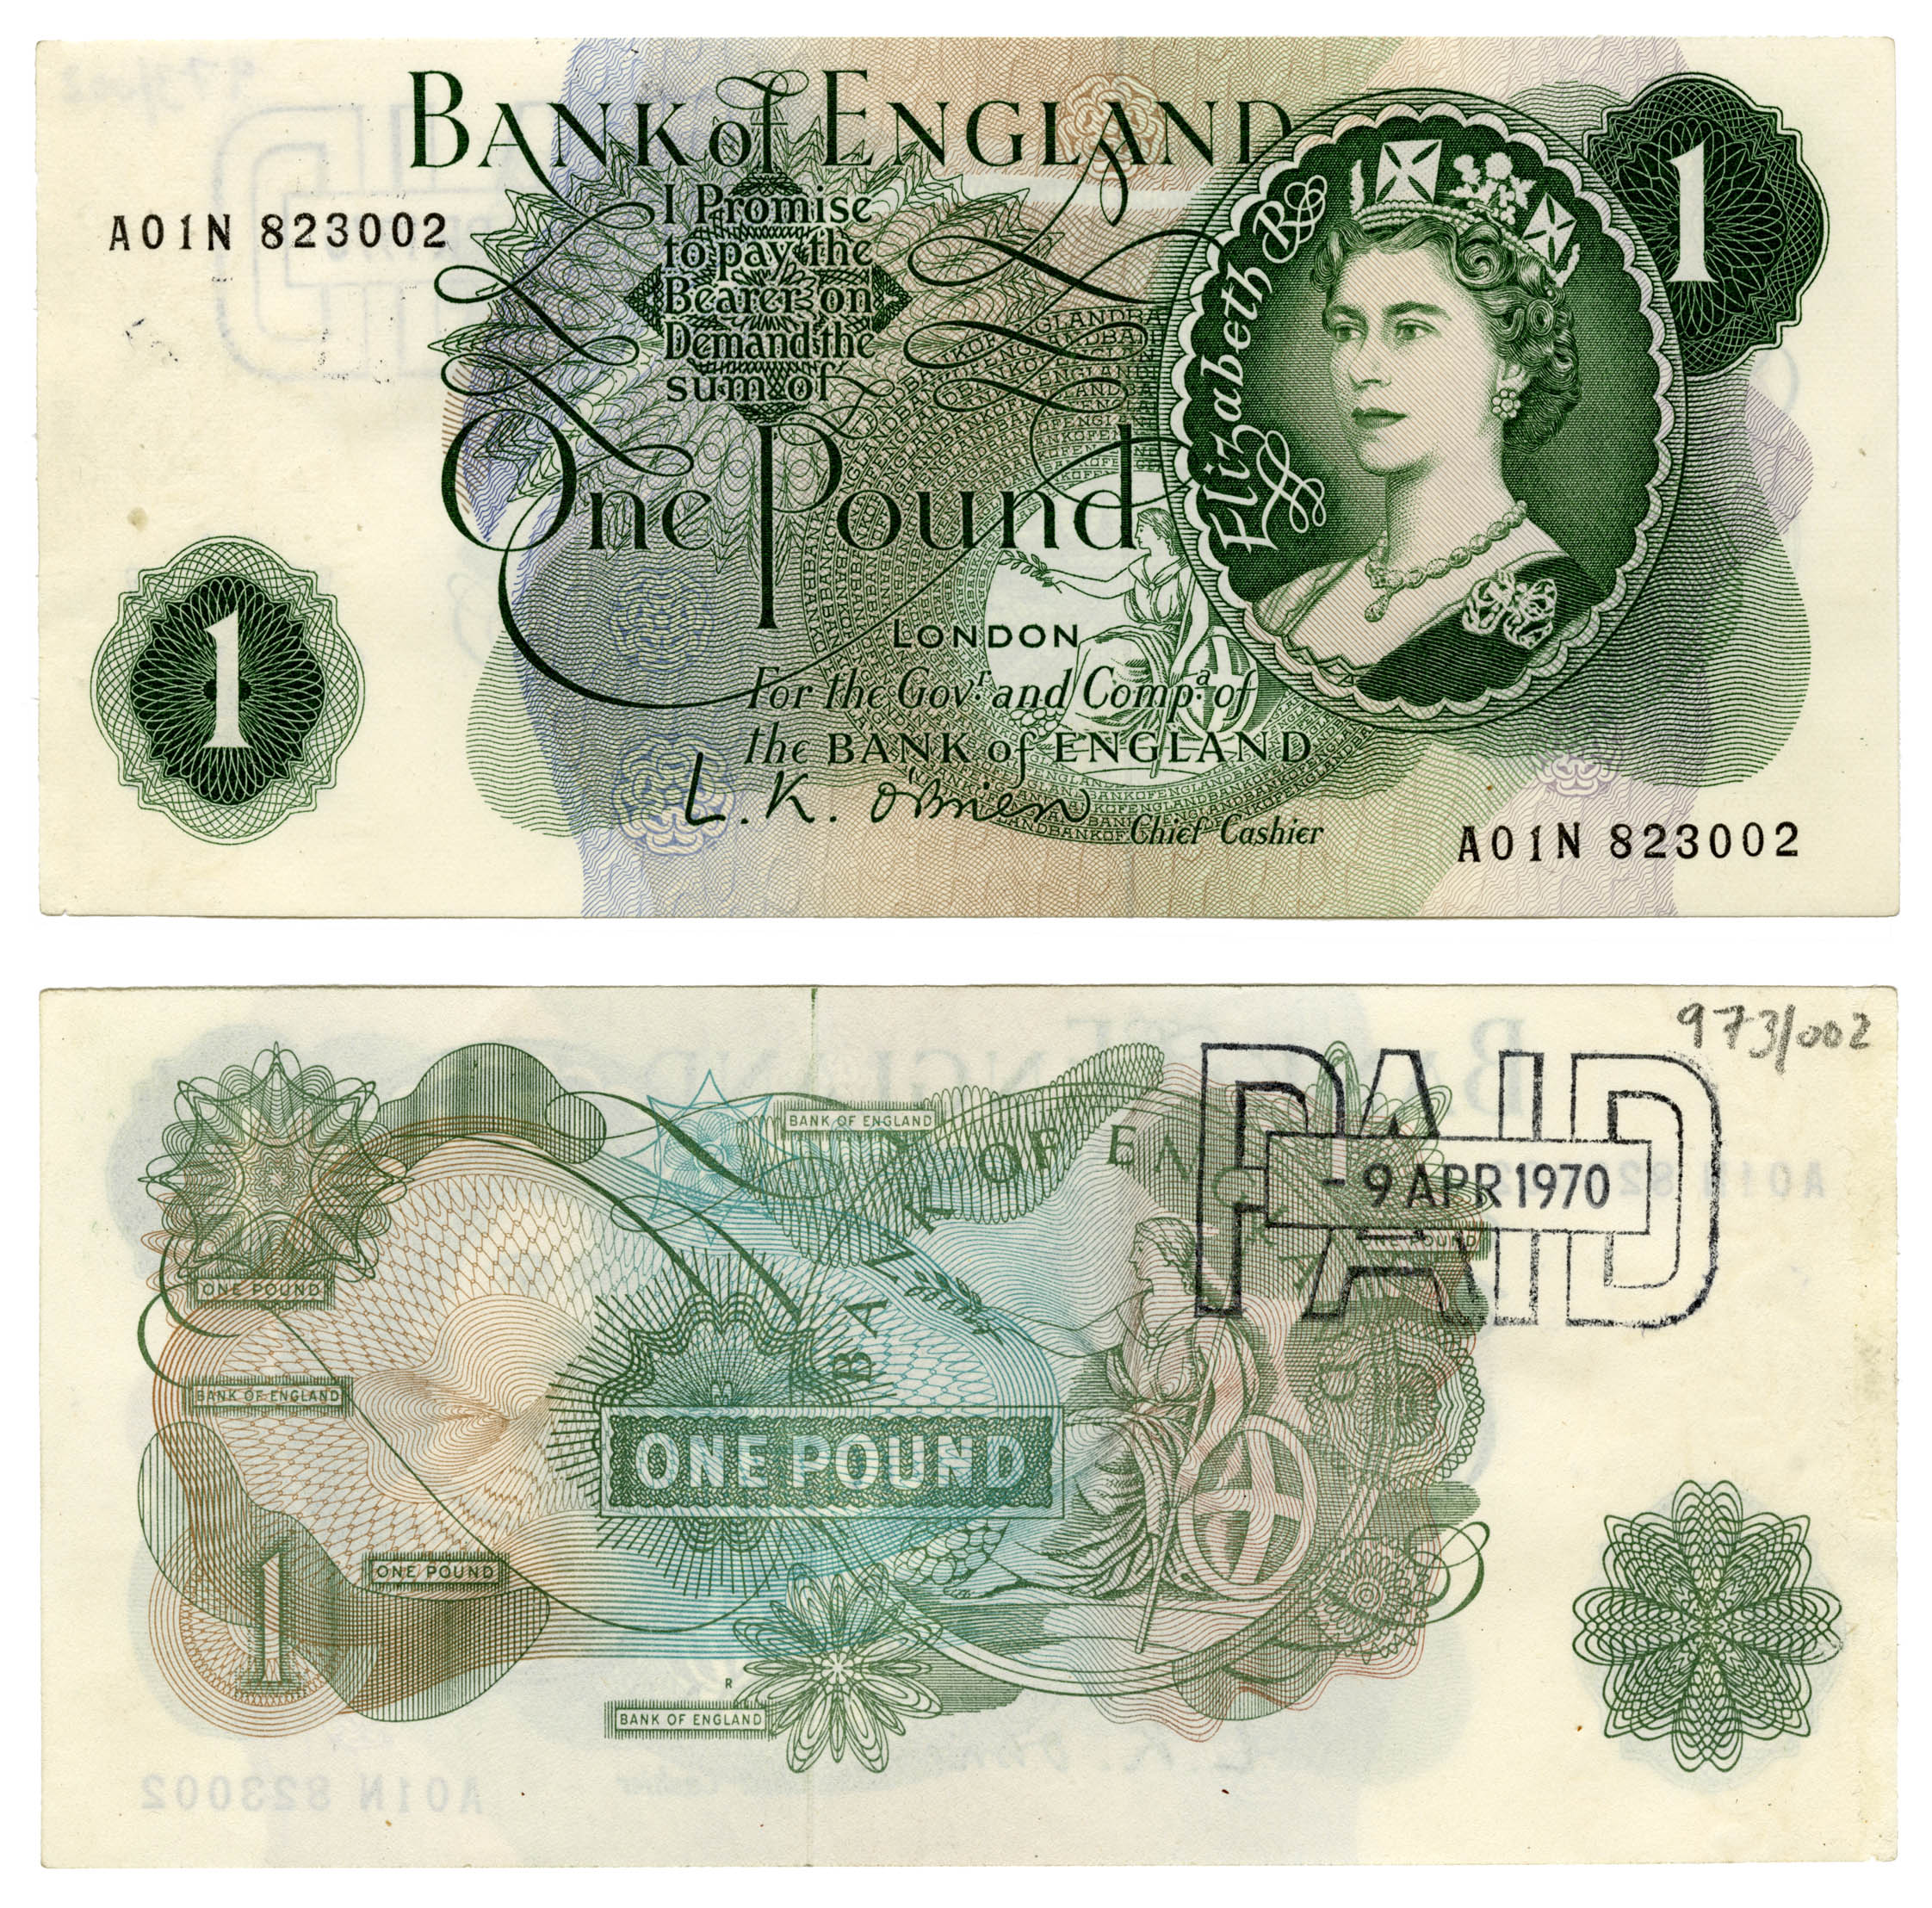 £1 note featuring Queen Elizabeth II